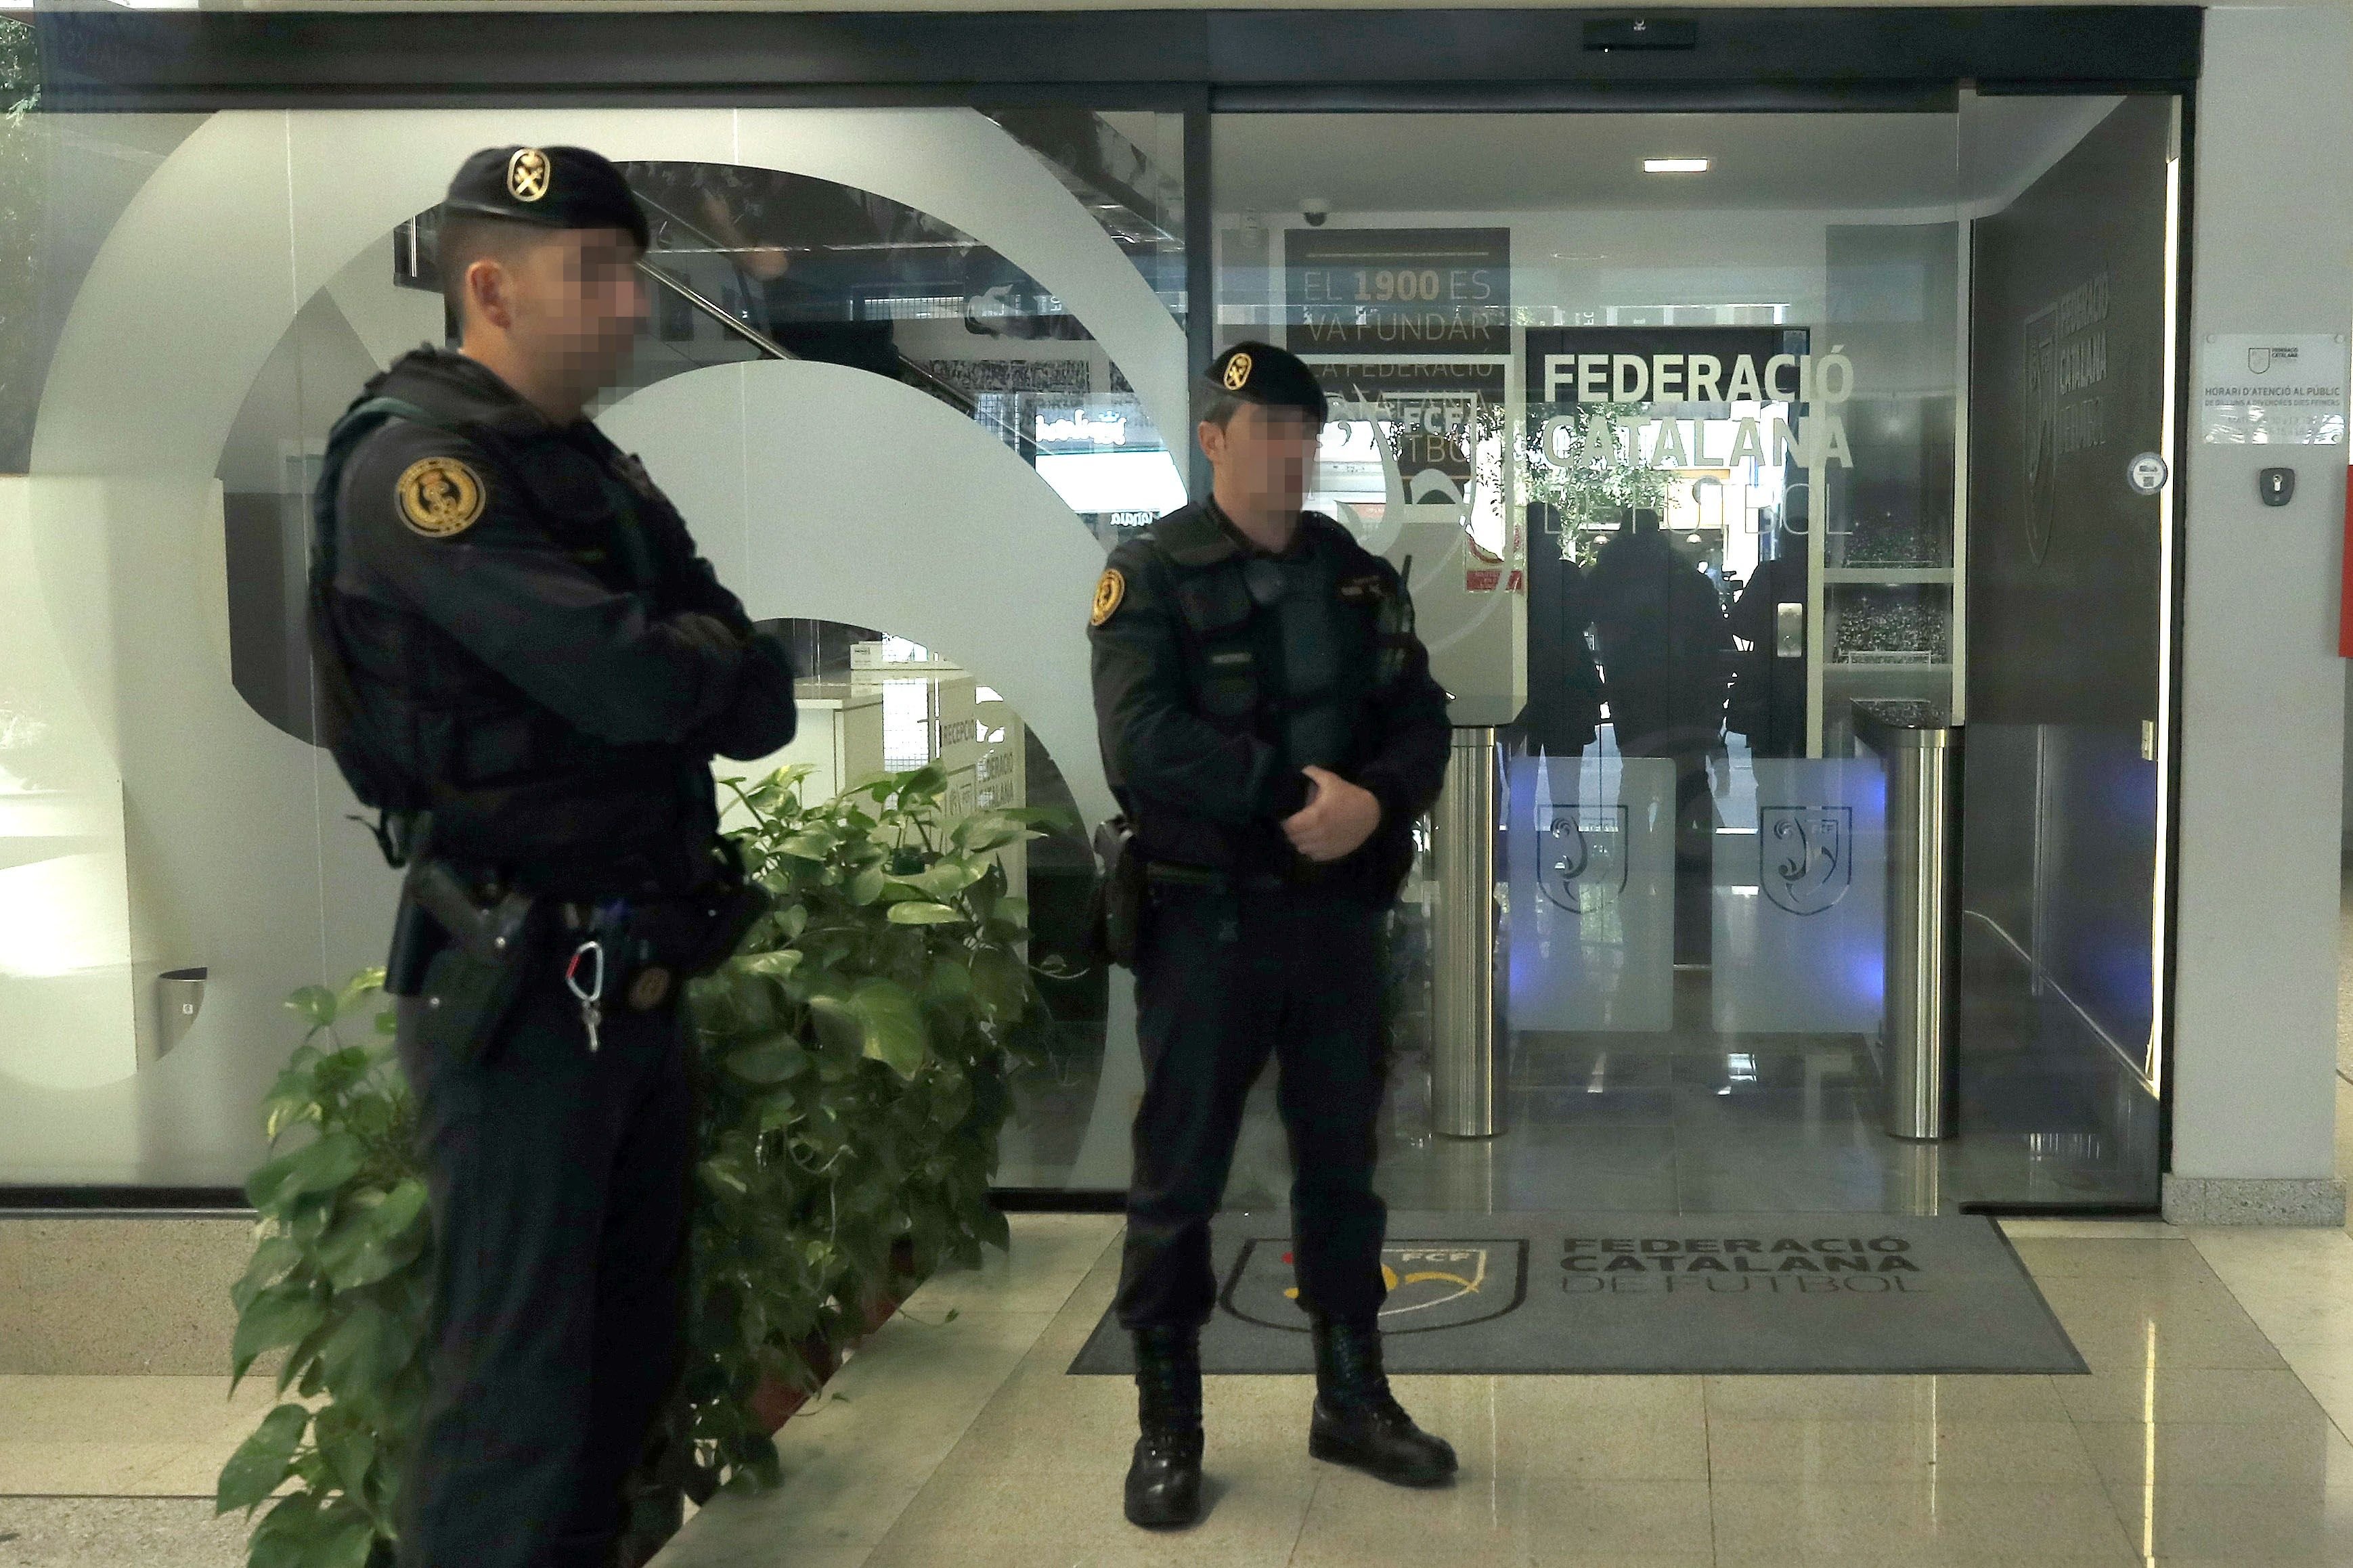 La Federació Catalana de Futbol confirma els registres policials a la seva seu